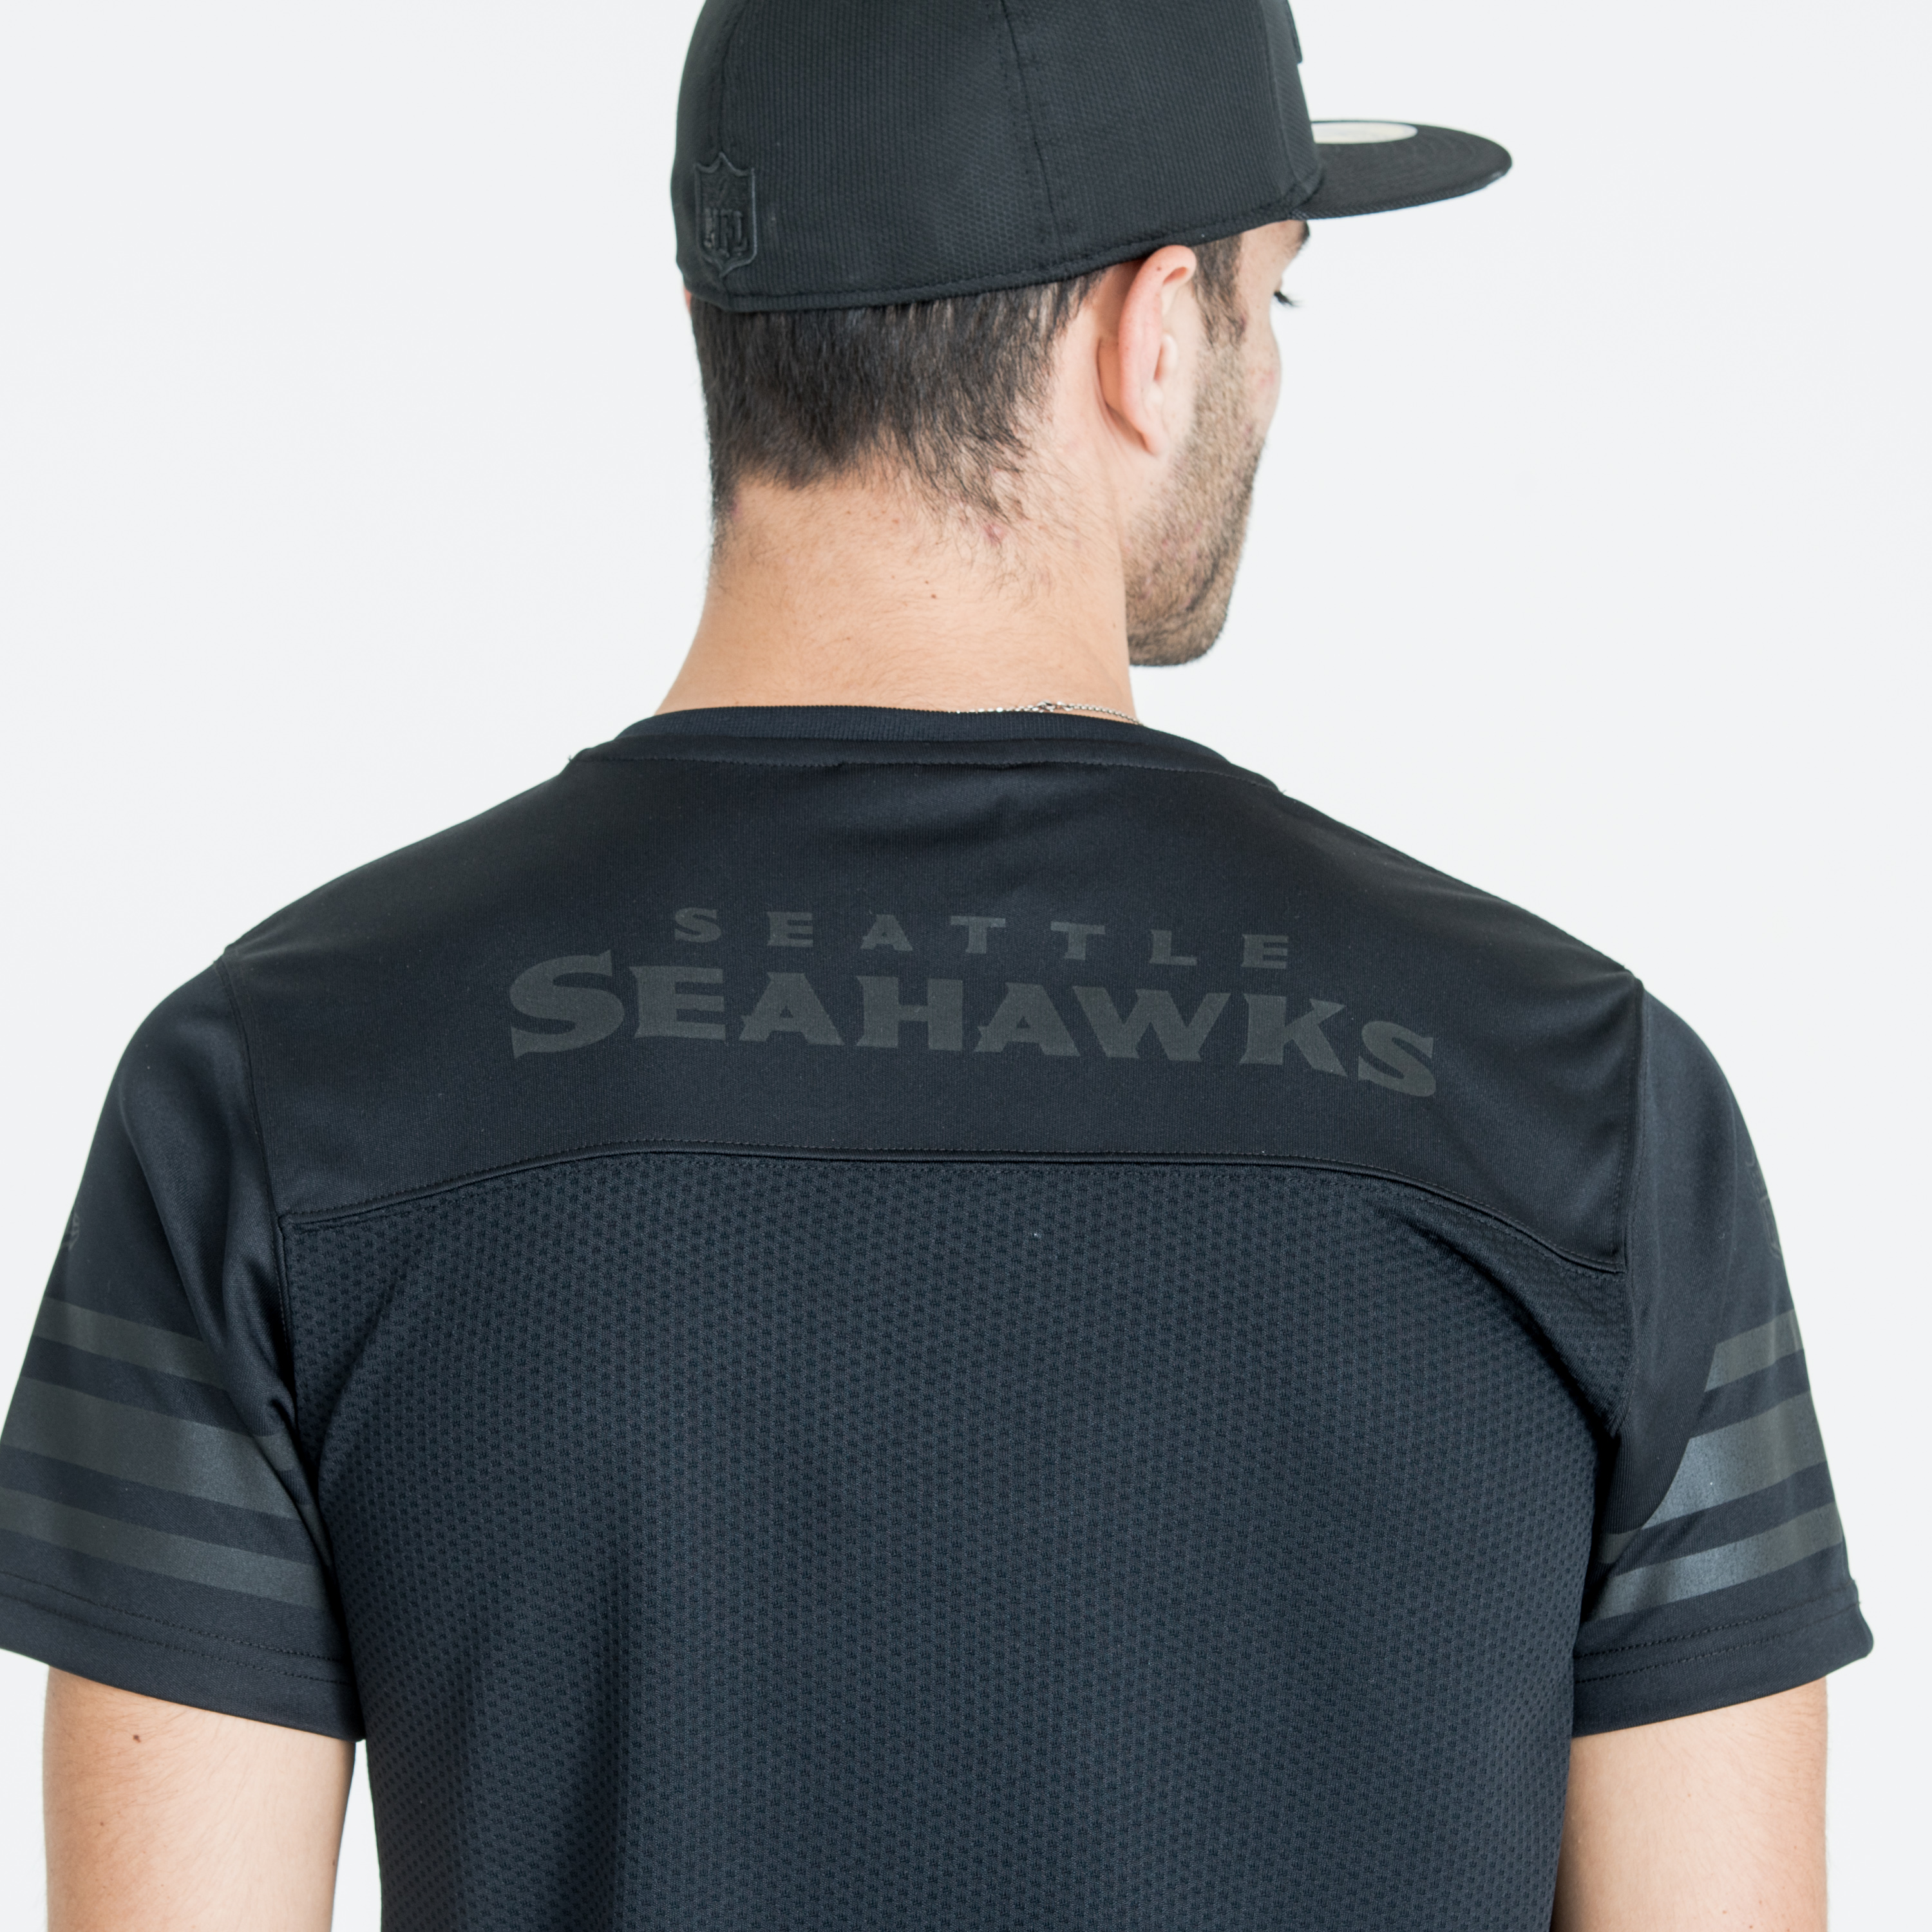 2017 Supporters Jersey – Seattle Seahawks – Black on Black